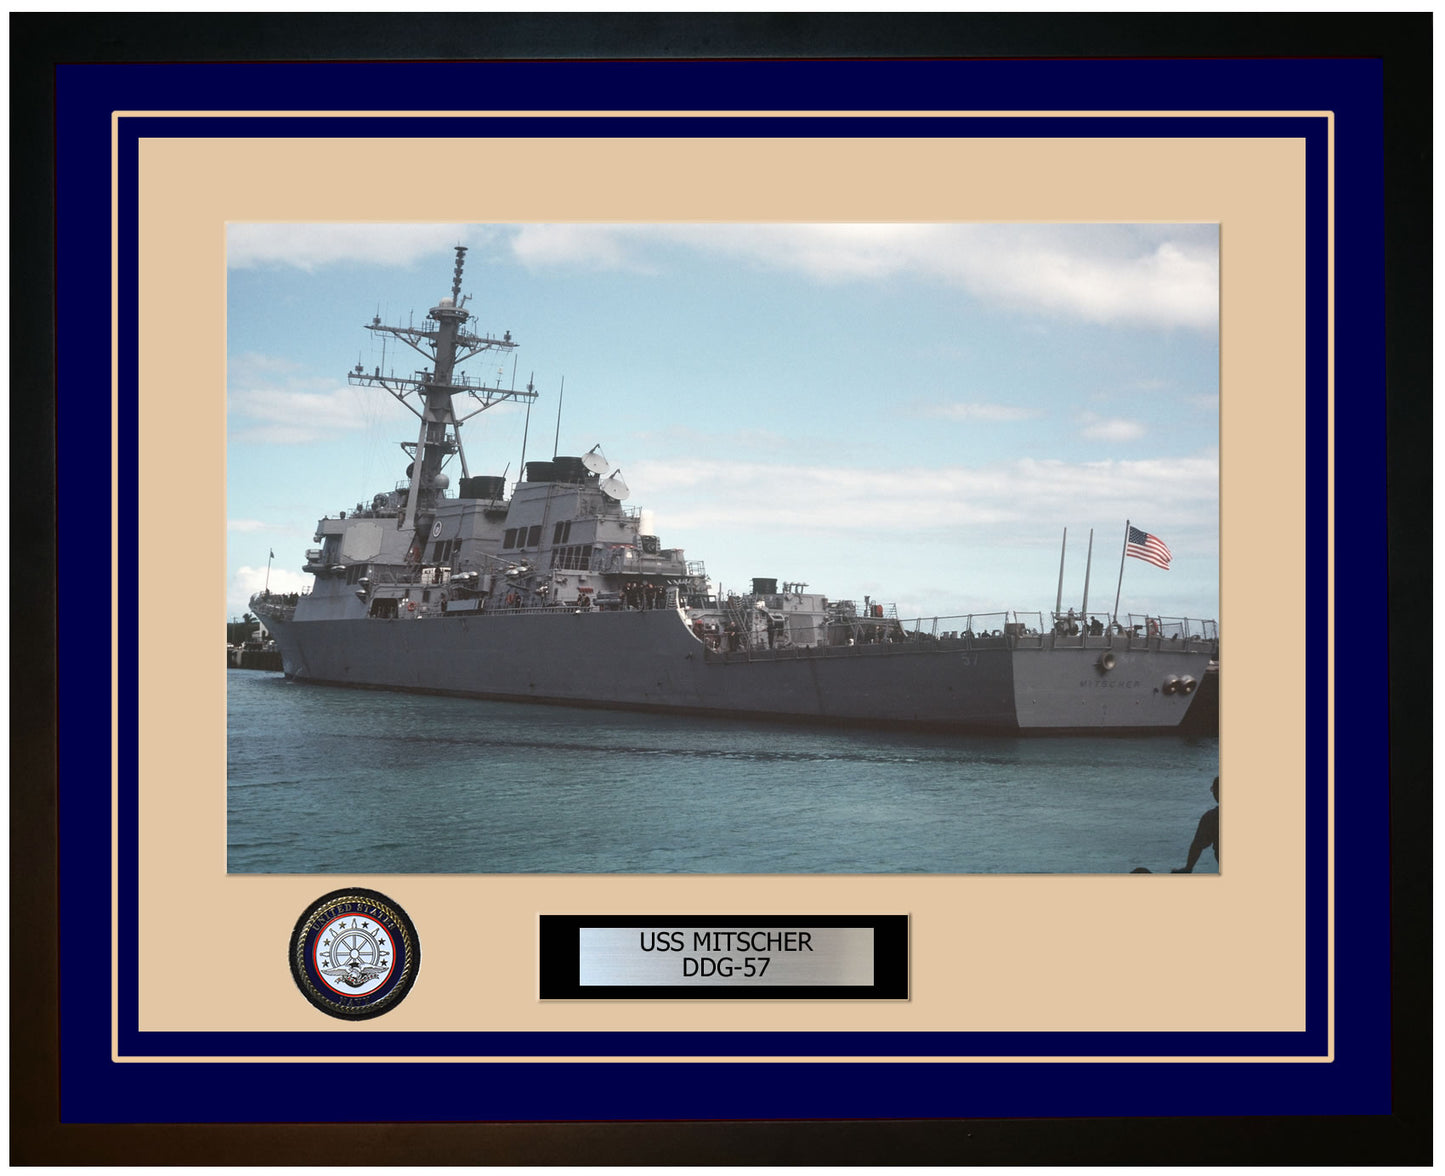 USS MITSCHER DDG-57 Framed Navy Ship Photo Blue